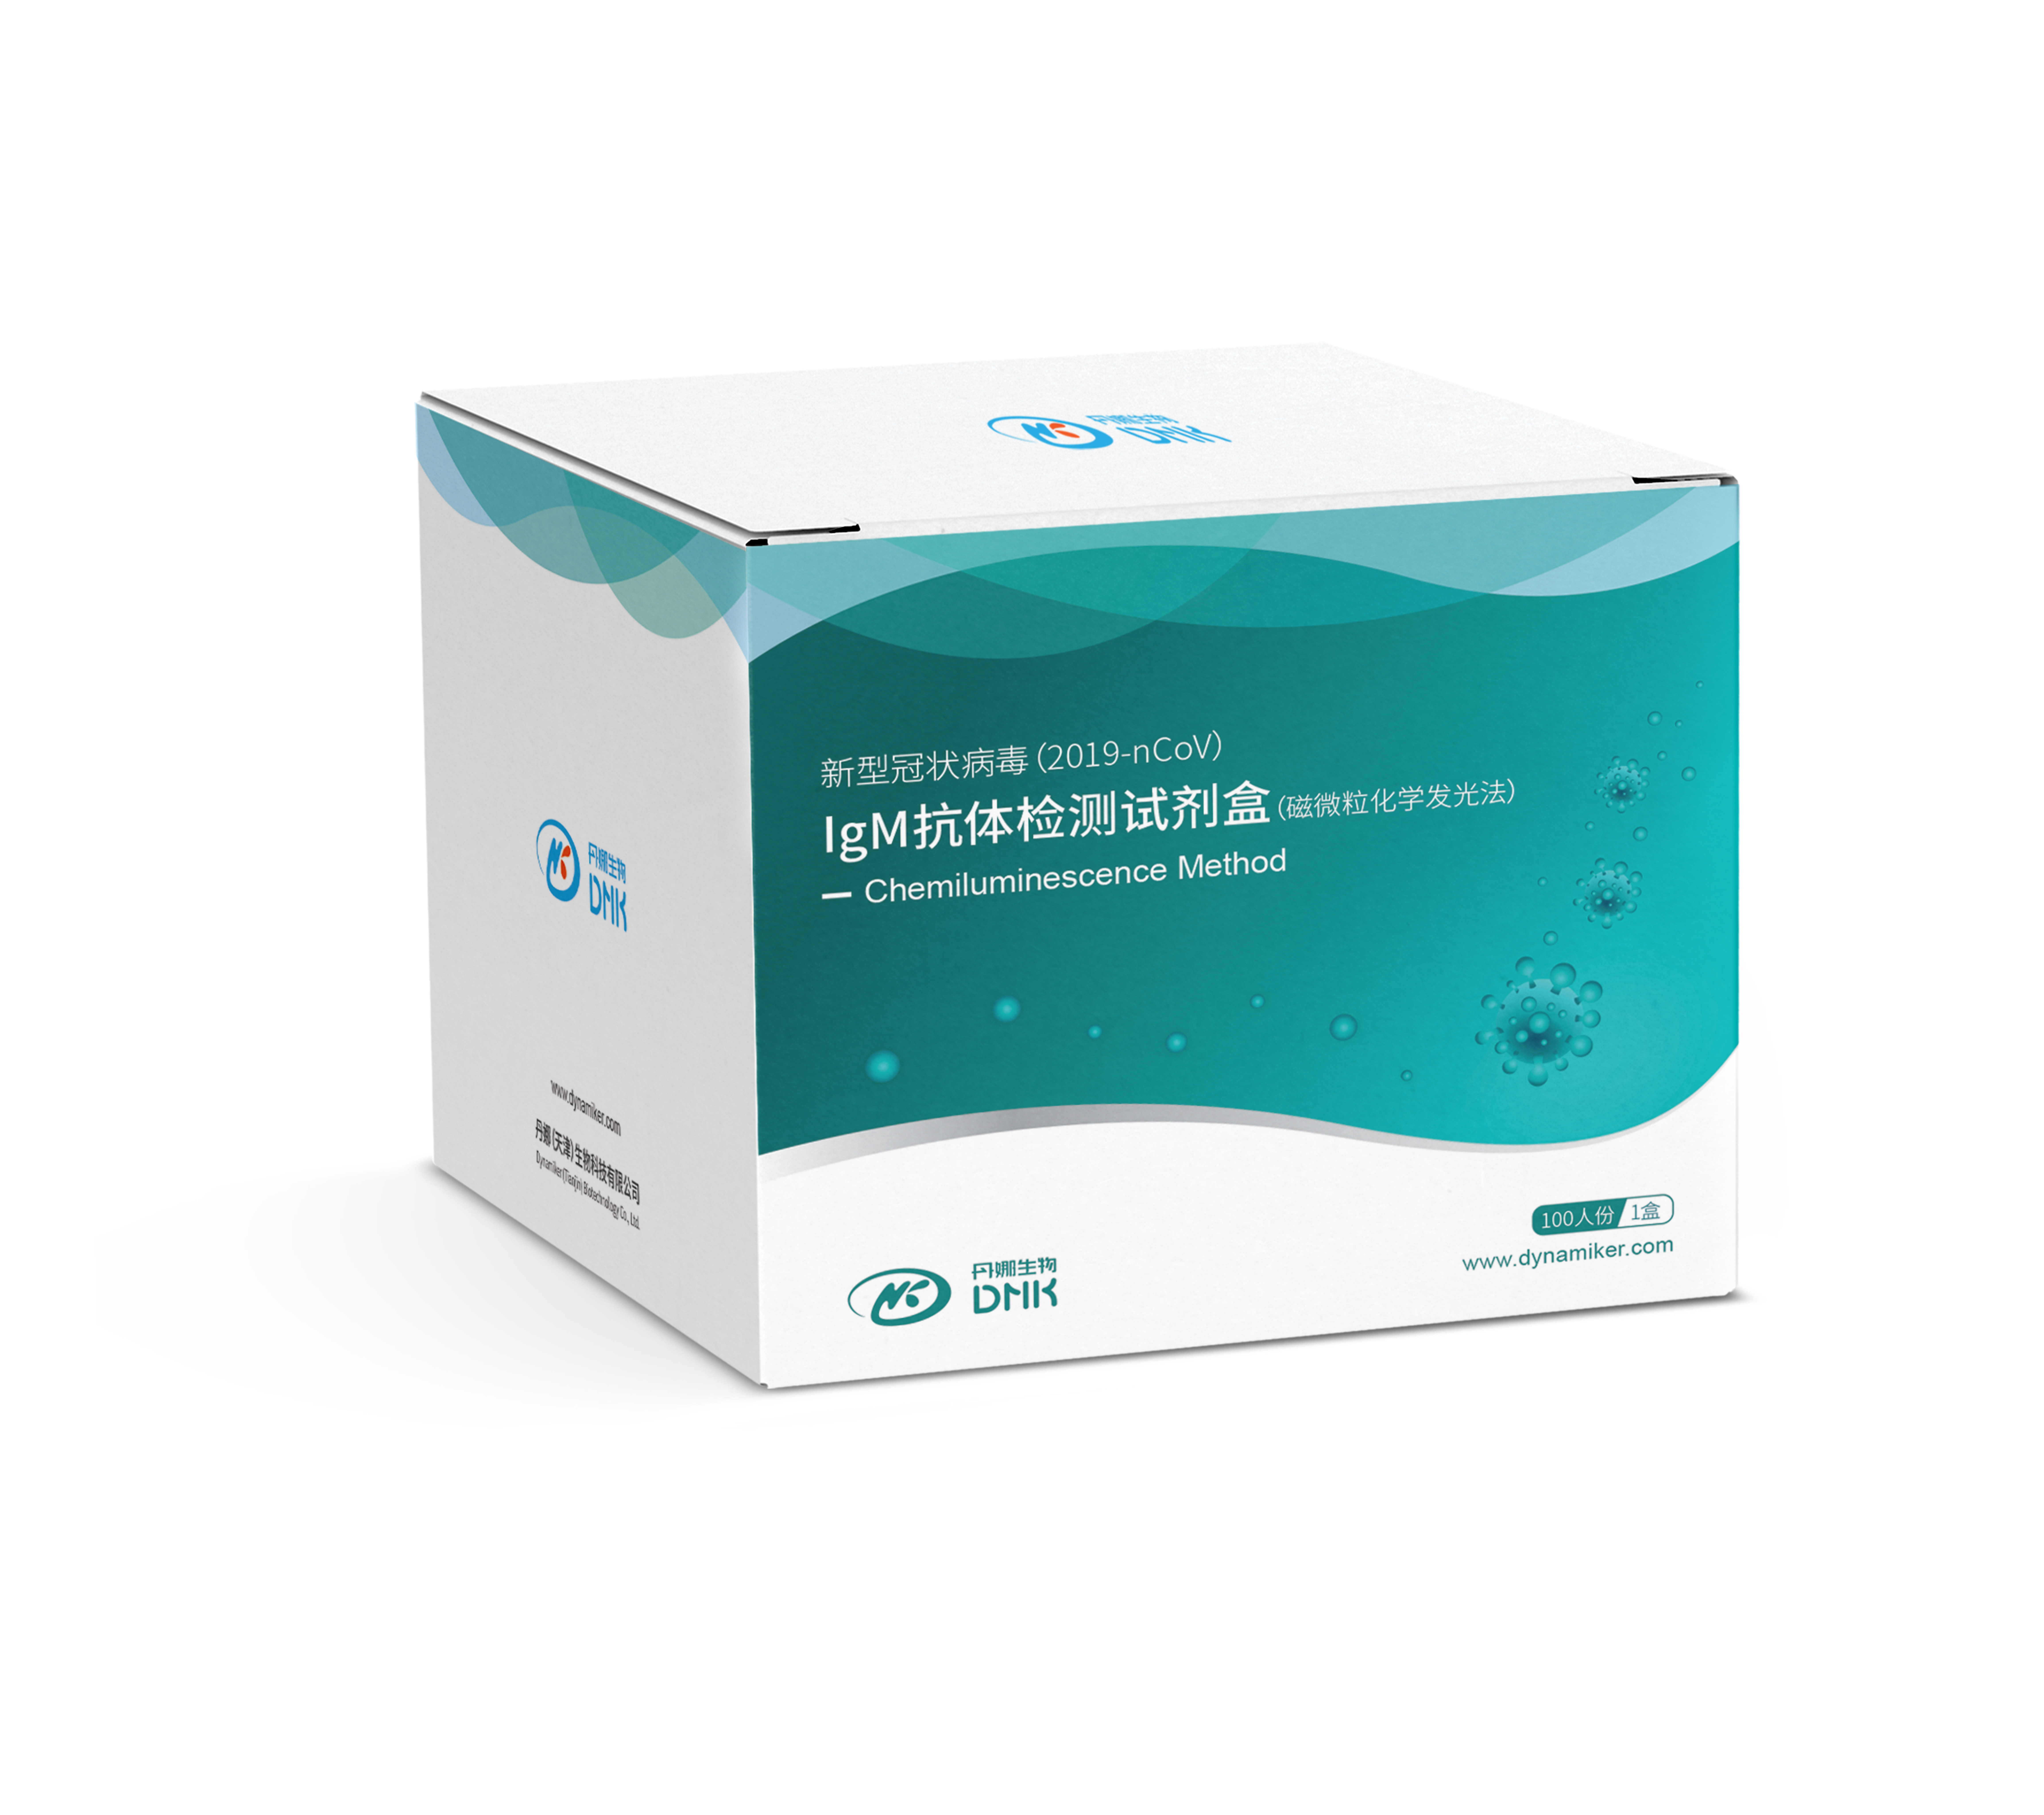 【丹娜】新型冠状病毒(2019-nCoV)IgM抗体检测试剂盒(磁微粒化学发光法)